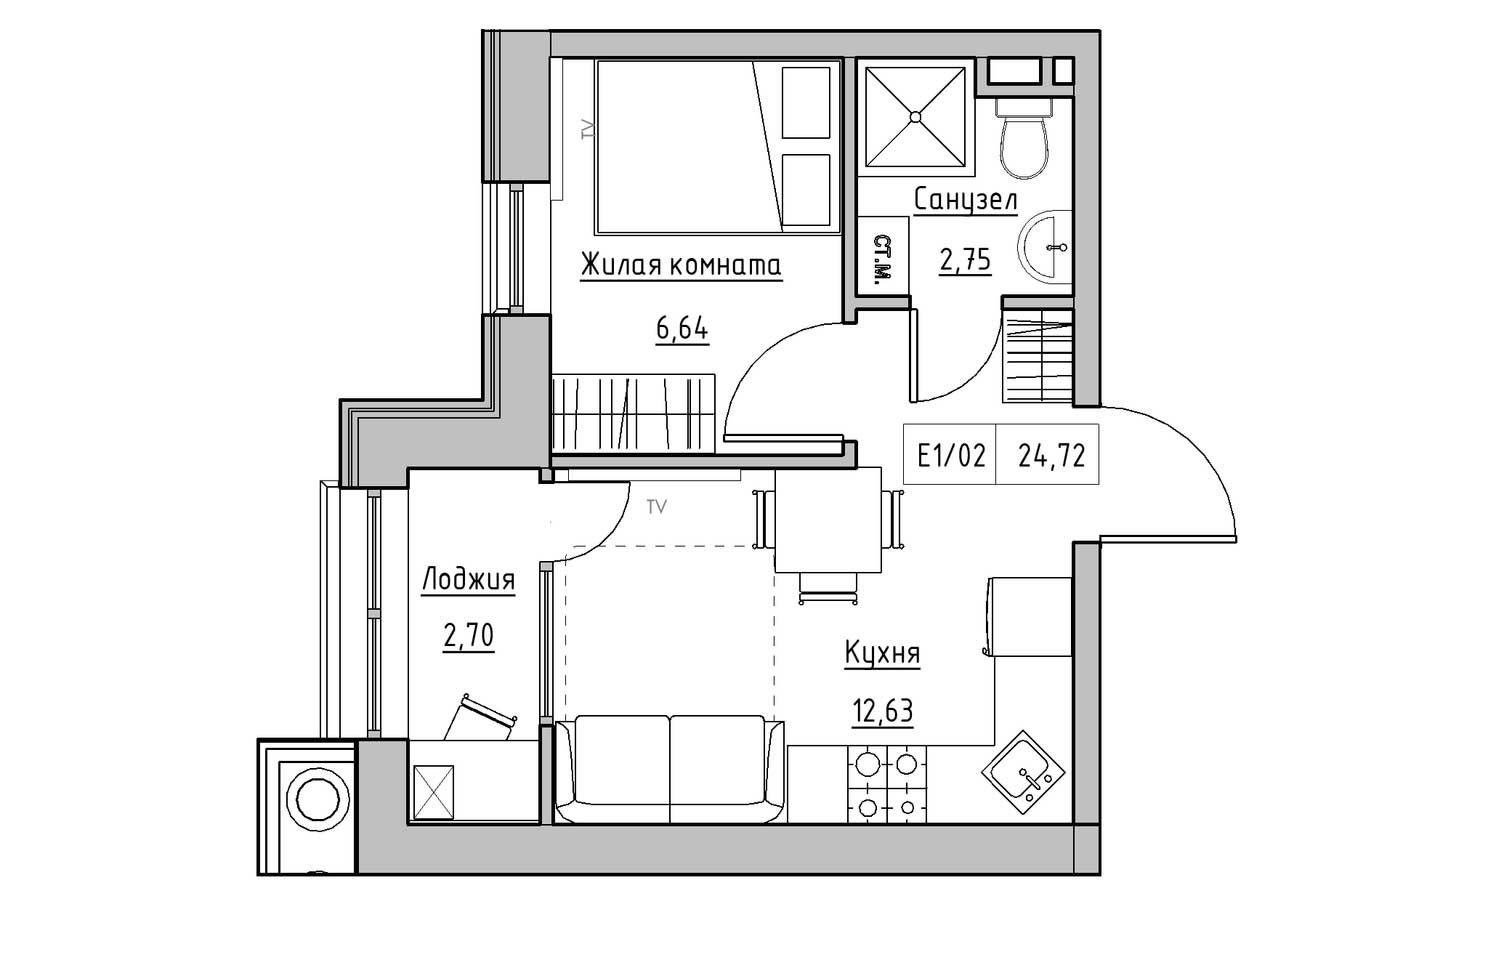 Планировка 1-к квартира площей 24.72м2, KS-010-01/0013.